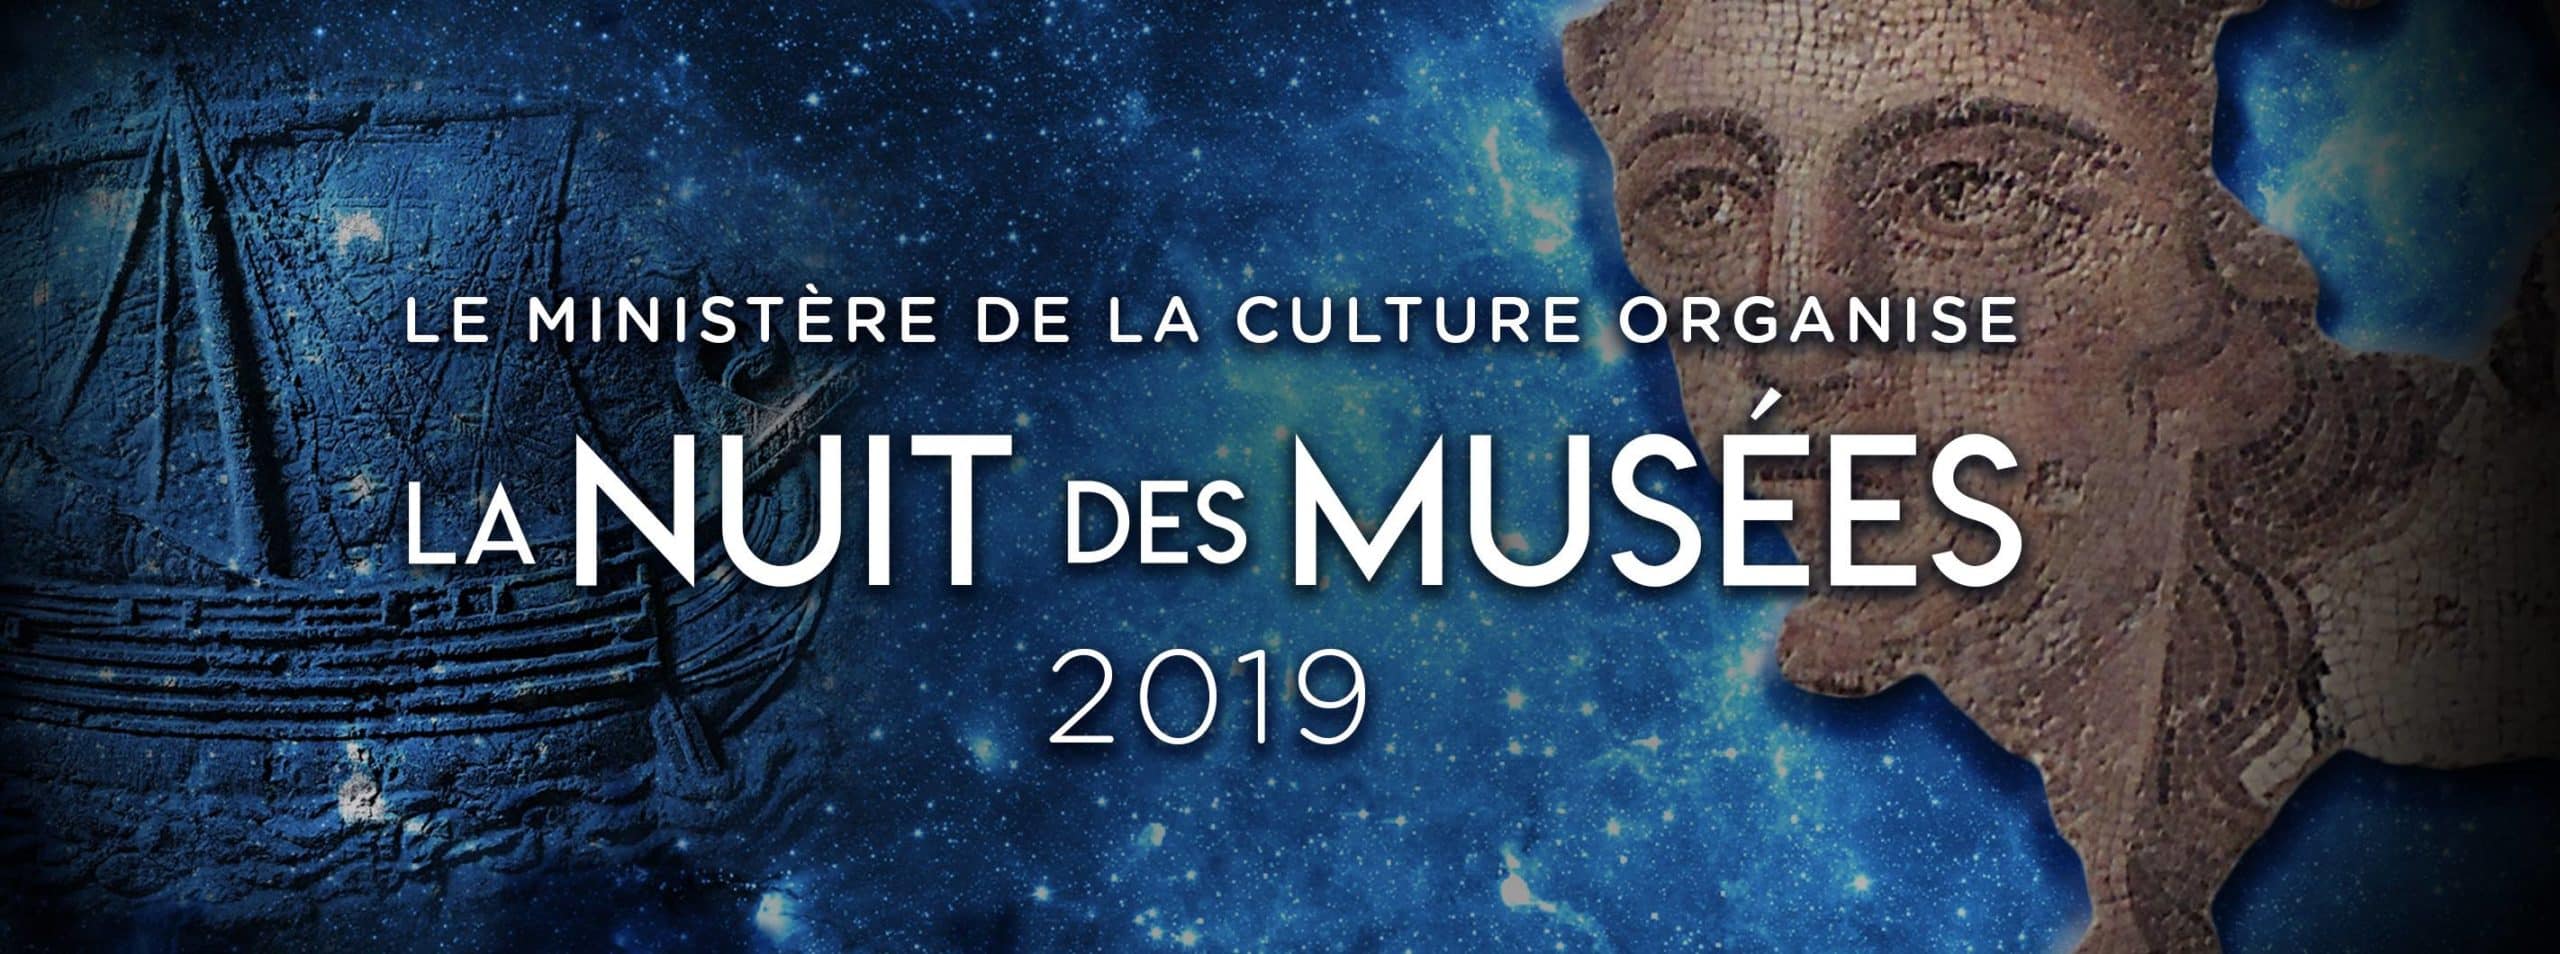 L'Affiche de la 6ème édition de la Nuit des Musées - 2019.